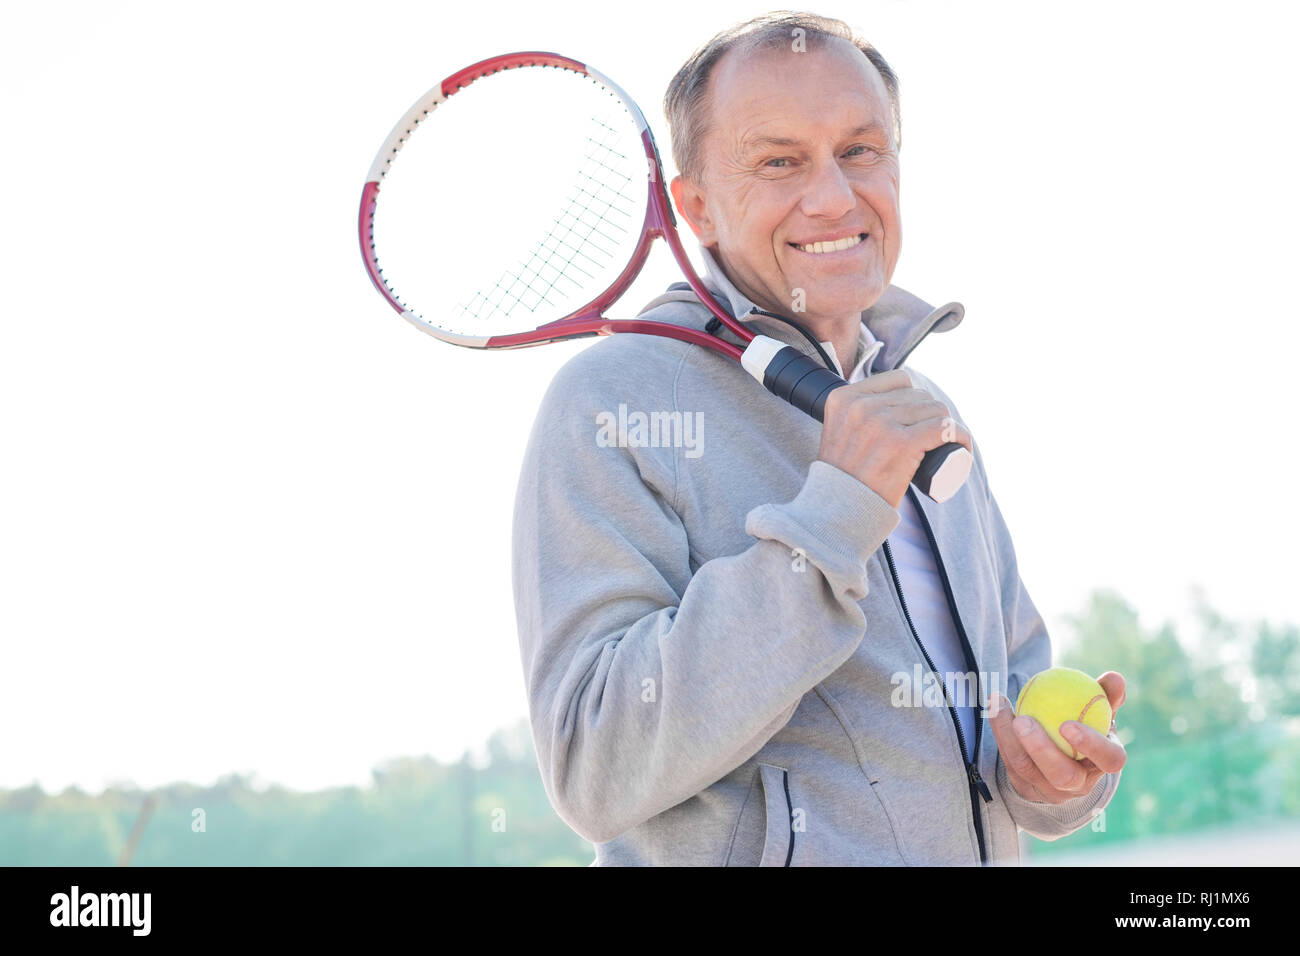 Portrait of smiling senior retraité homme debout avec raquette de tennis et la balle contre le ciel clair aux beaux jours Banque D'Images